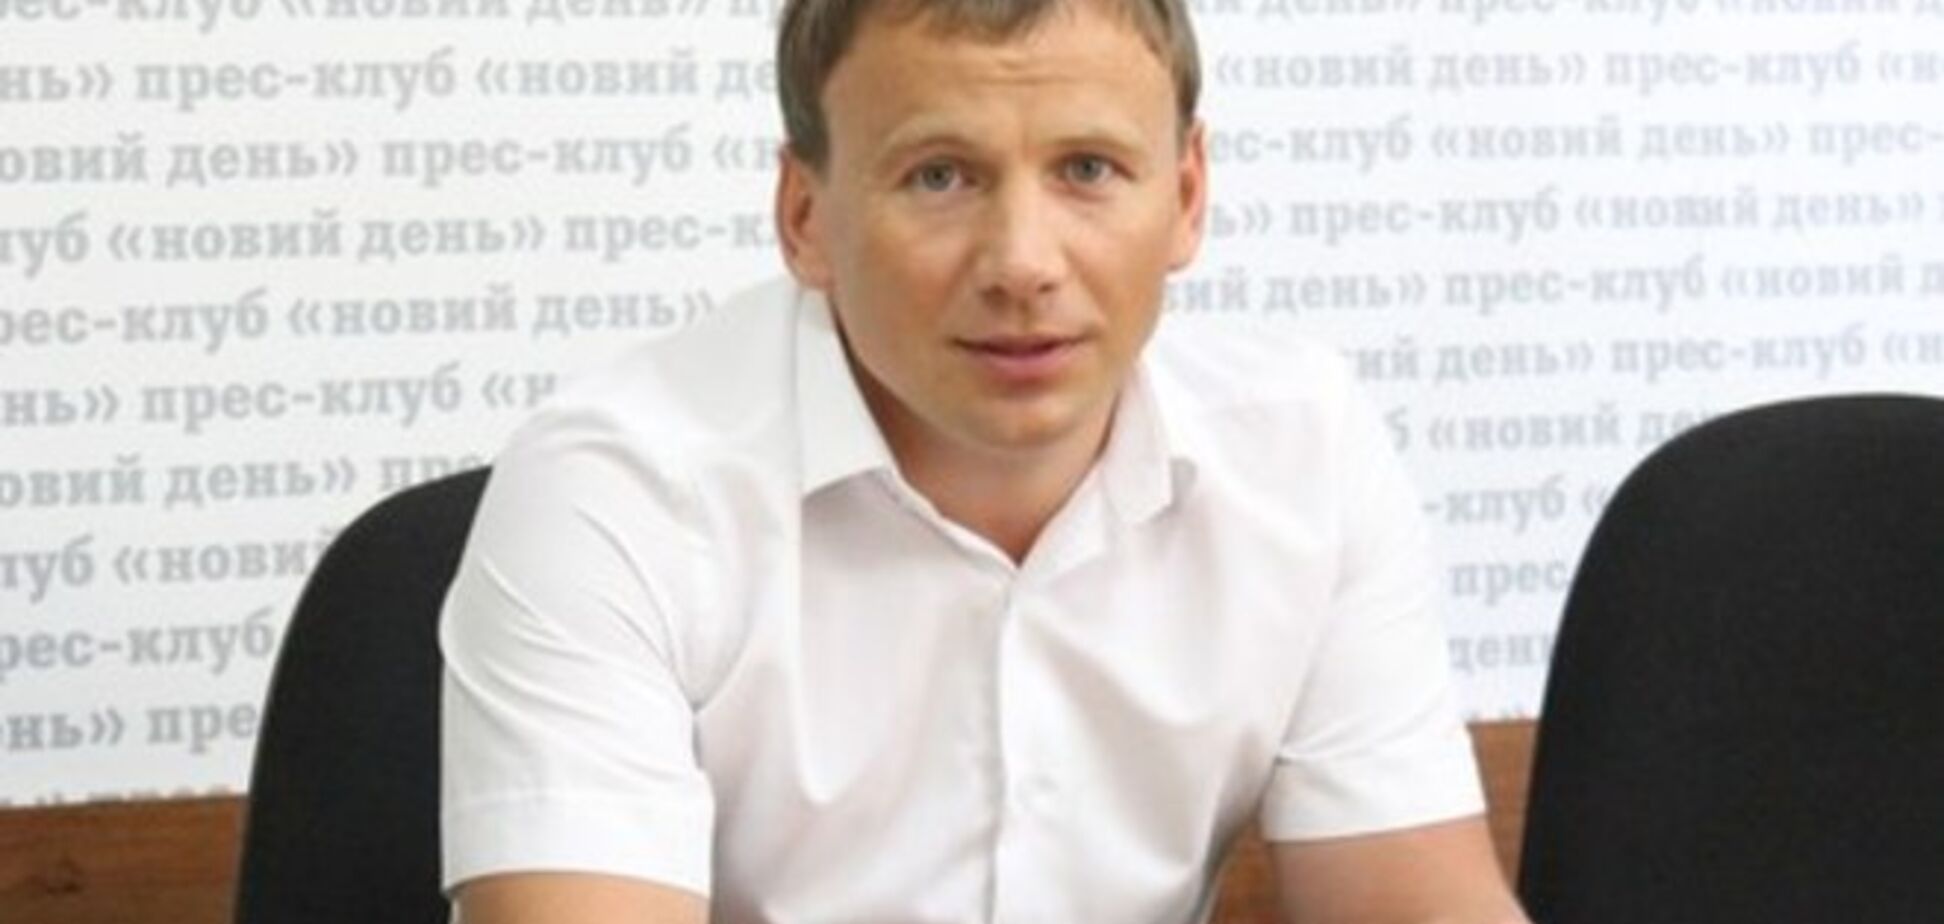 Либеральная партия Украины предлагает сузить базу налогообложения